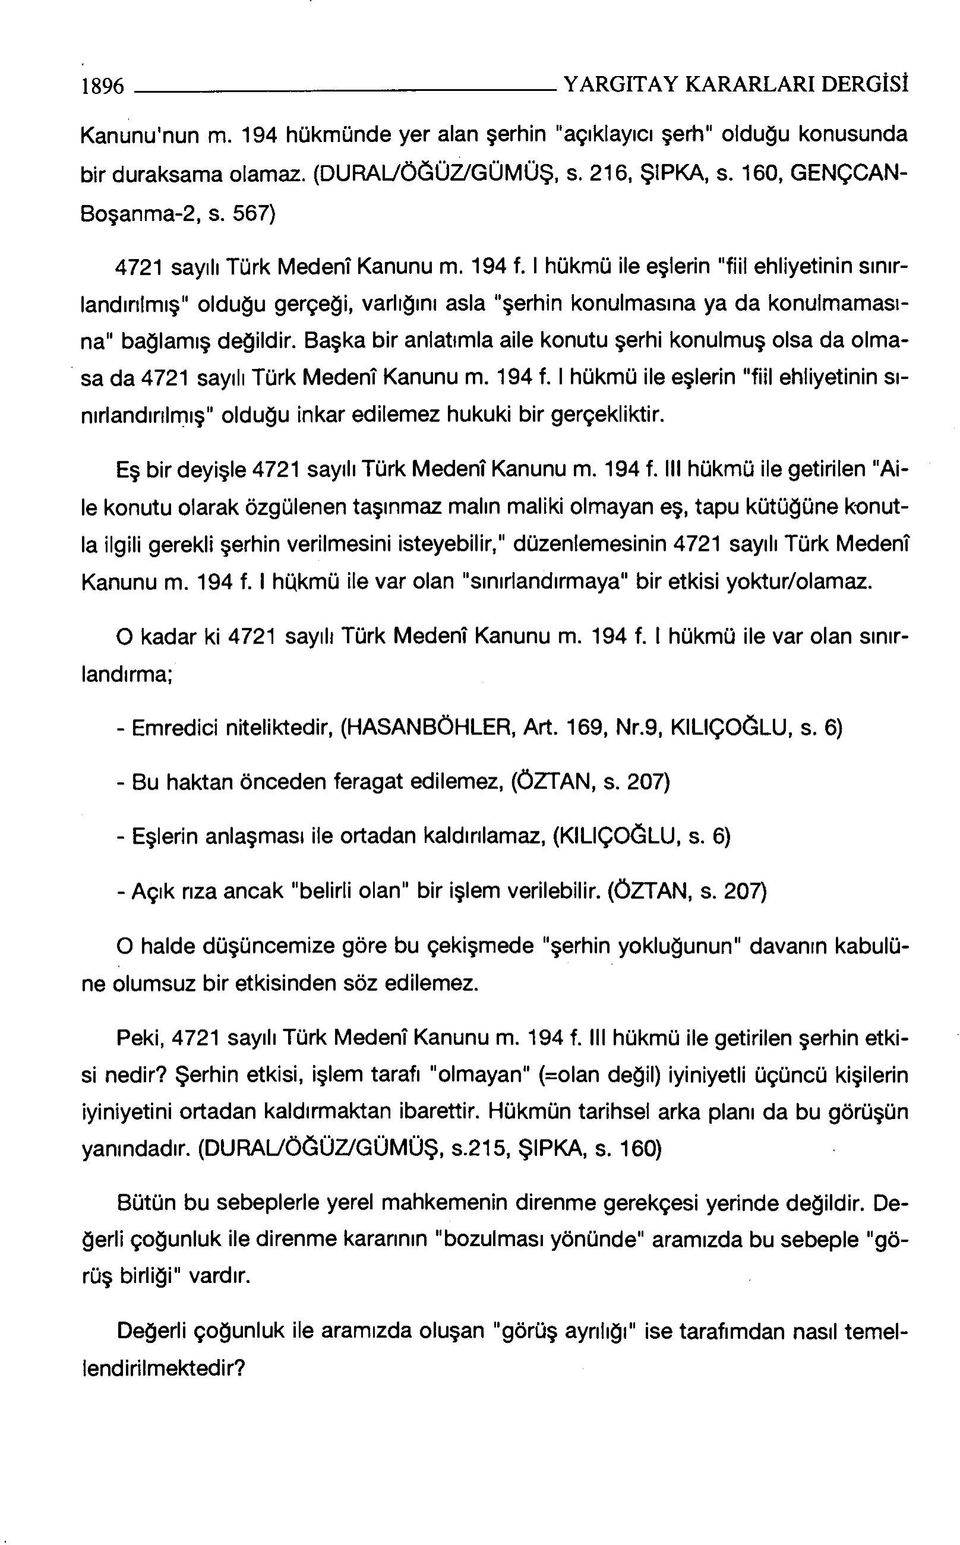 Başka bir anlatımla aile konutu şerhi konulmuş olsa da olmasa da 4721 sayılı Türk Medenî Kanunu m. 194 f.